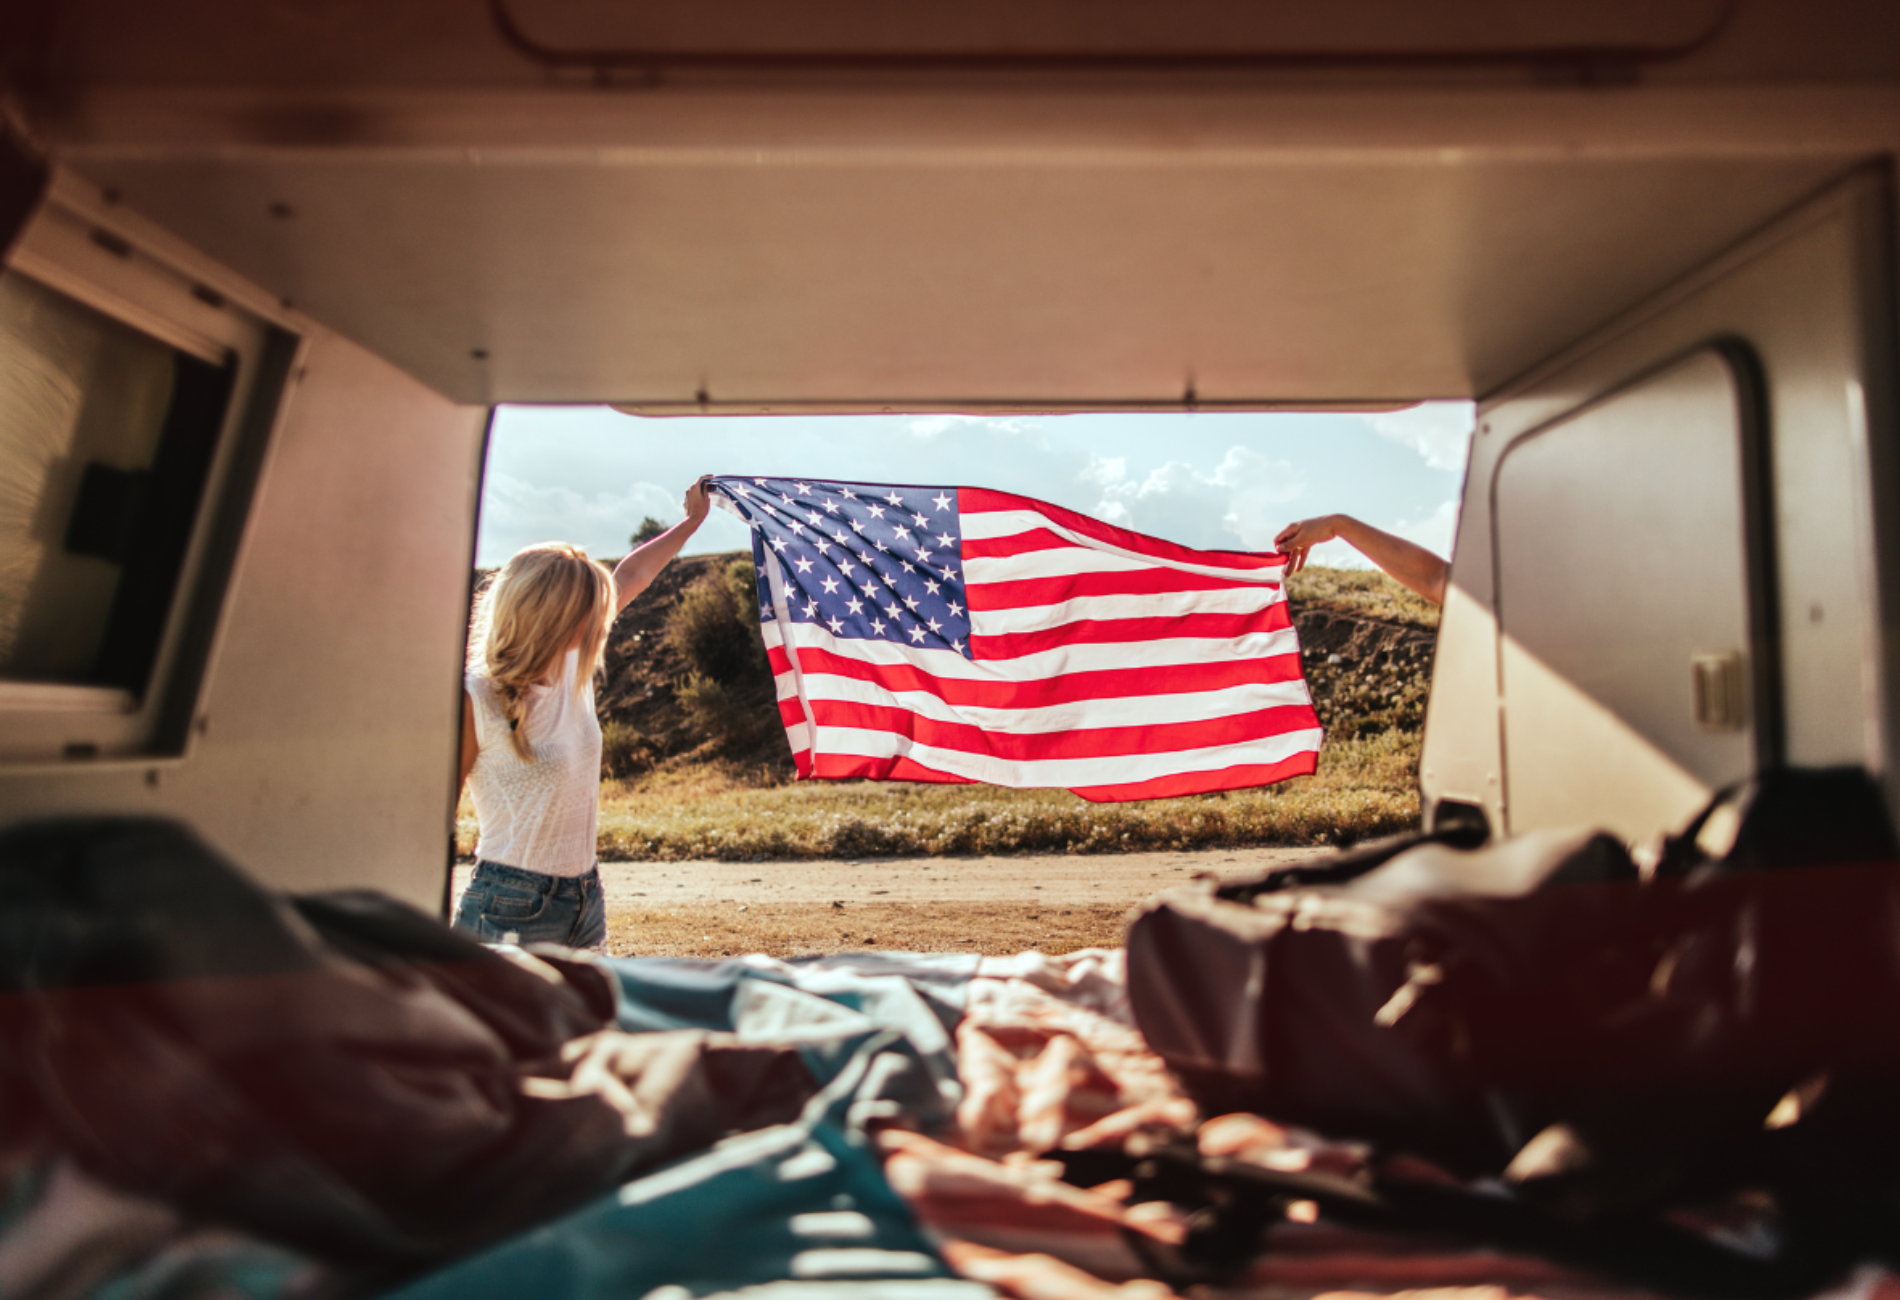 American flag held outside of a van